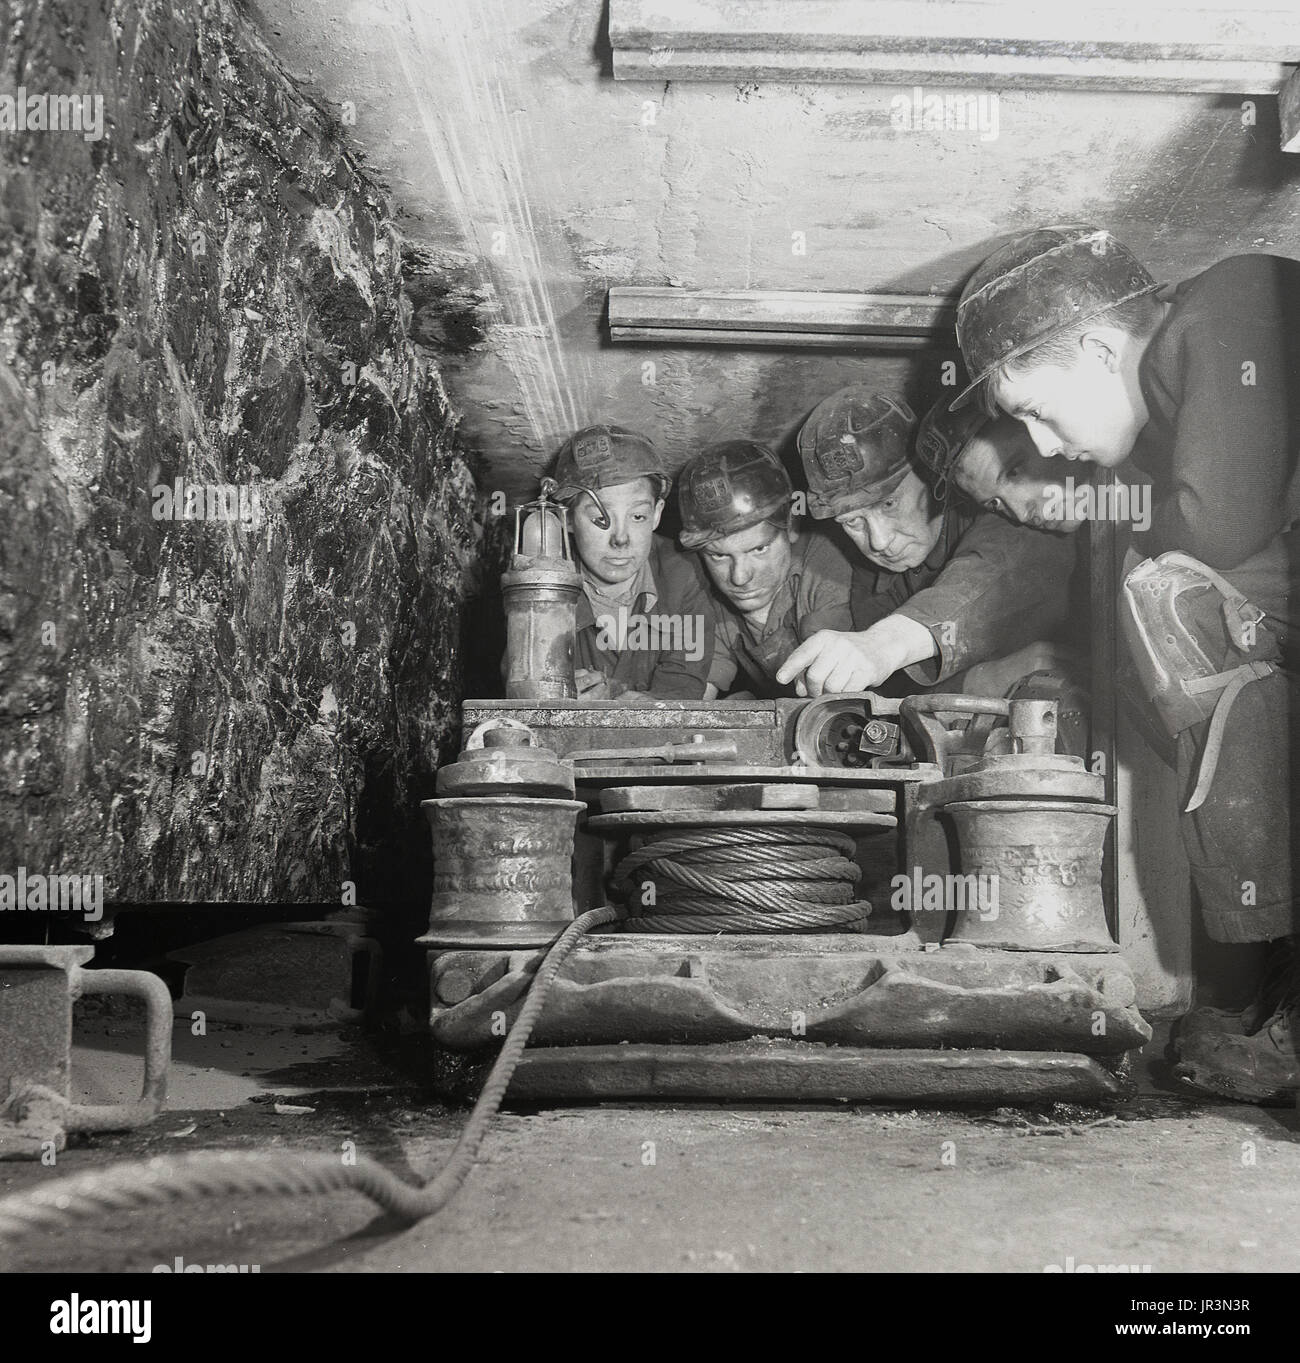 1948, historica, Inghilterra, le miniere di carbone di apprendisti o tirocinanti in sotterraneo ha insegnato tecniche di data mining, qui sono mostrati l'utilizzo di tubazioni in acciaio, Foto Stock